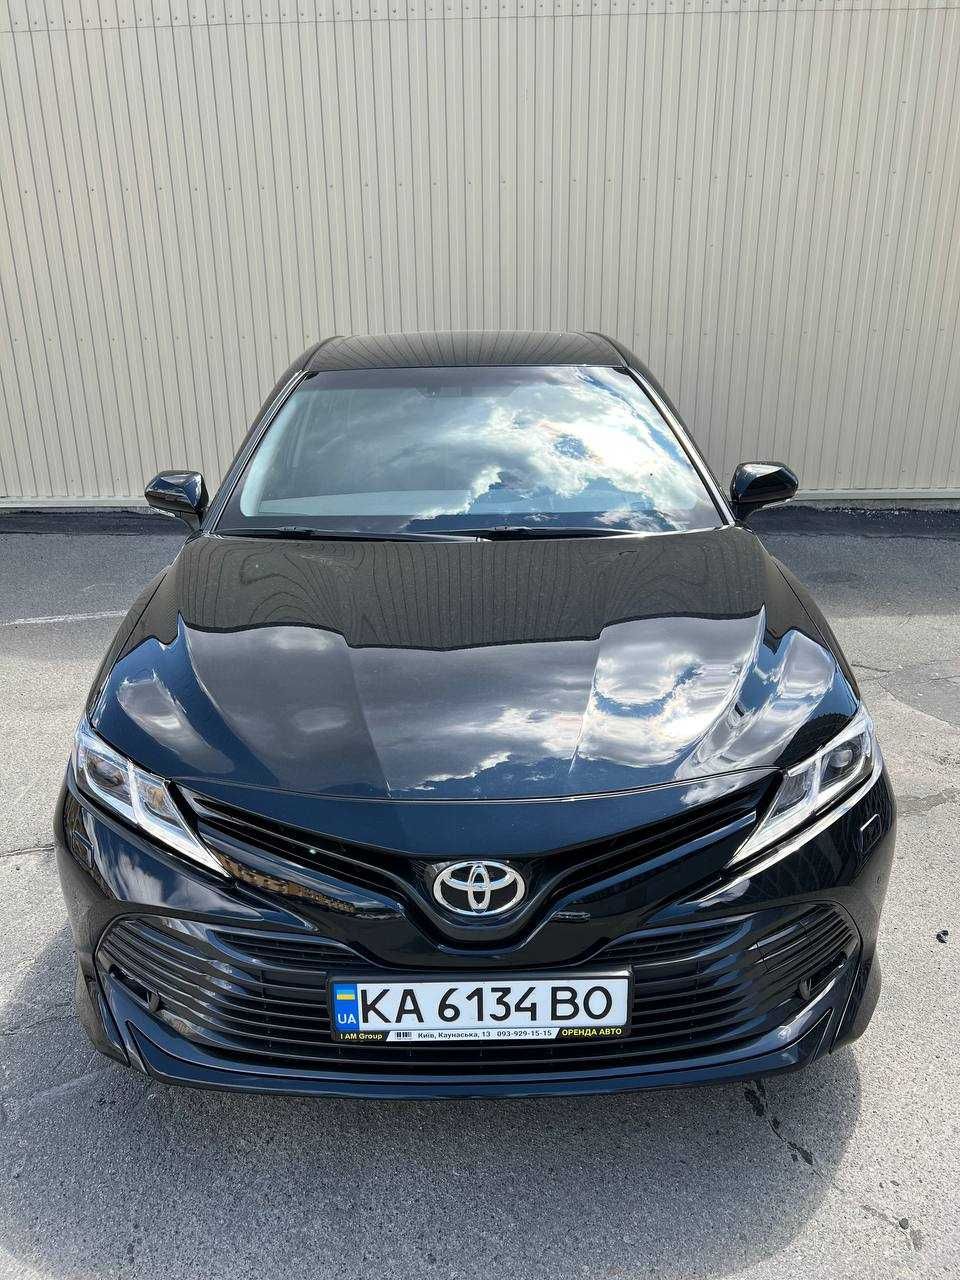 Оренда автомобіля авто під викуп Київ Toyota Camry 2020